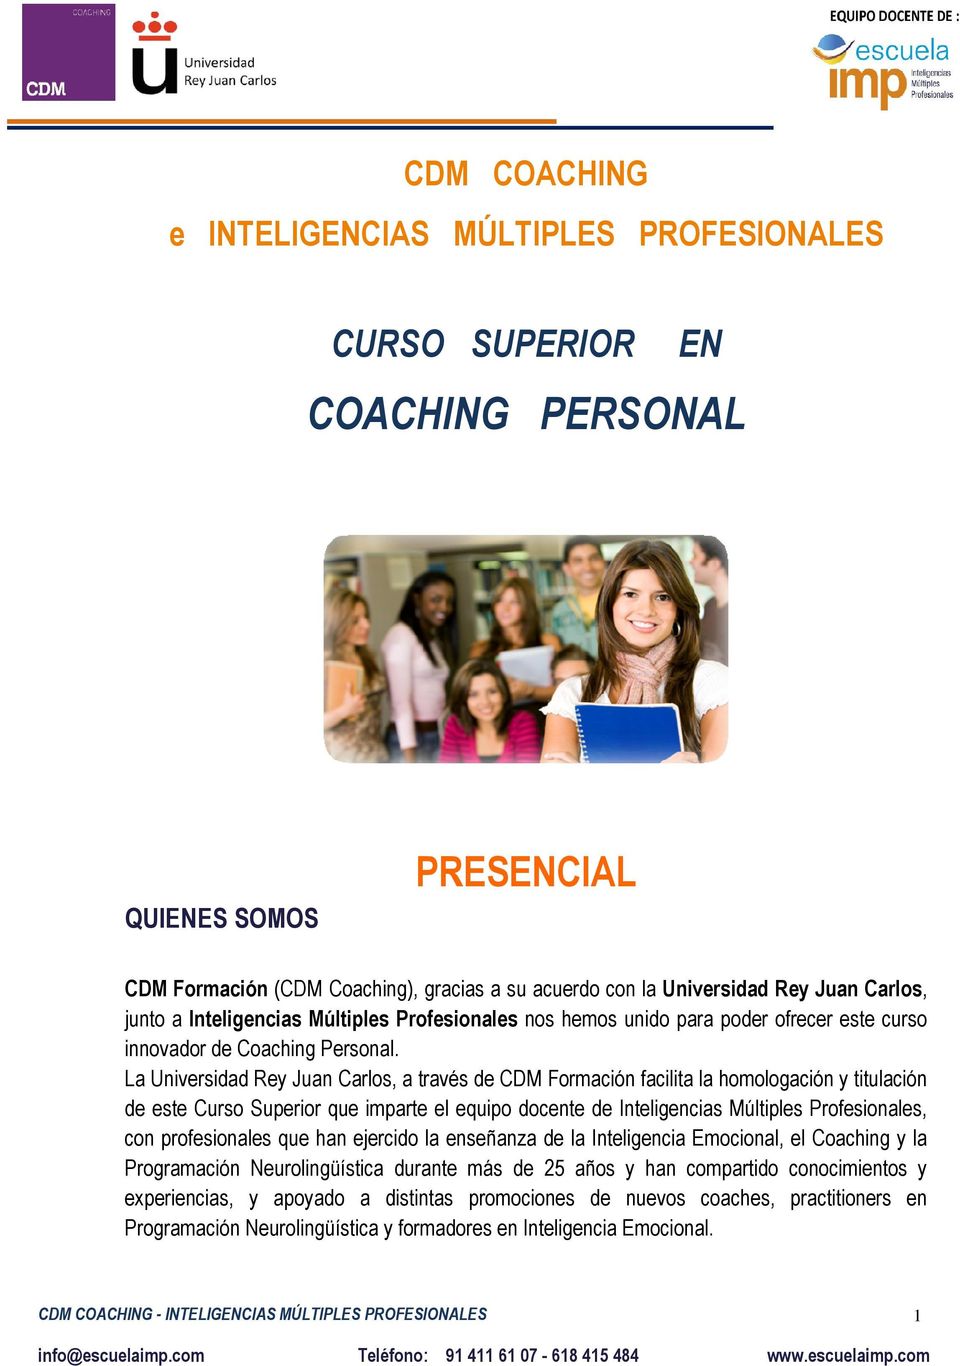 La Universidad Rey Juan Carlos, a través de CDM Formación facilita la homologación y titulación de este Curso Superior que imparte el equipo docente de Inteligencias Múltiples Profesionales, con